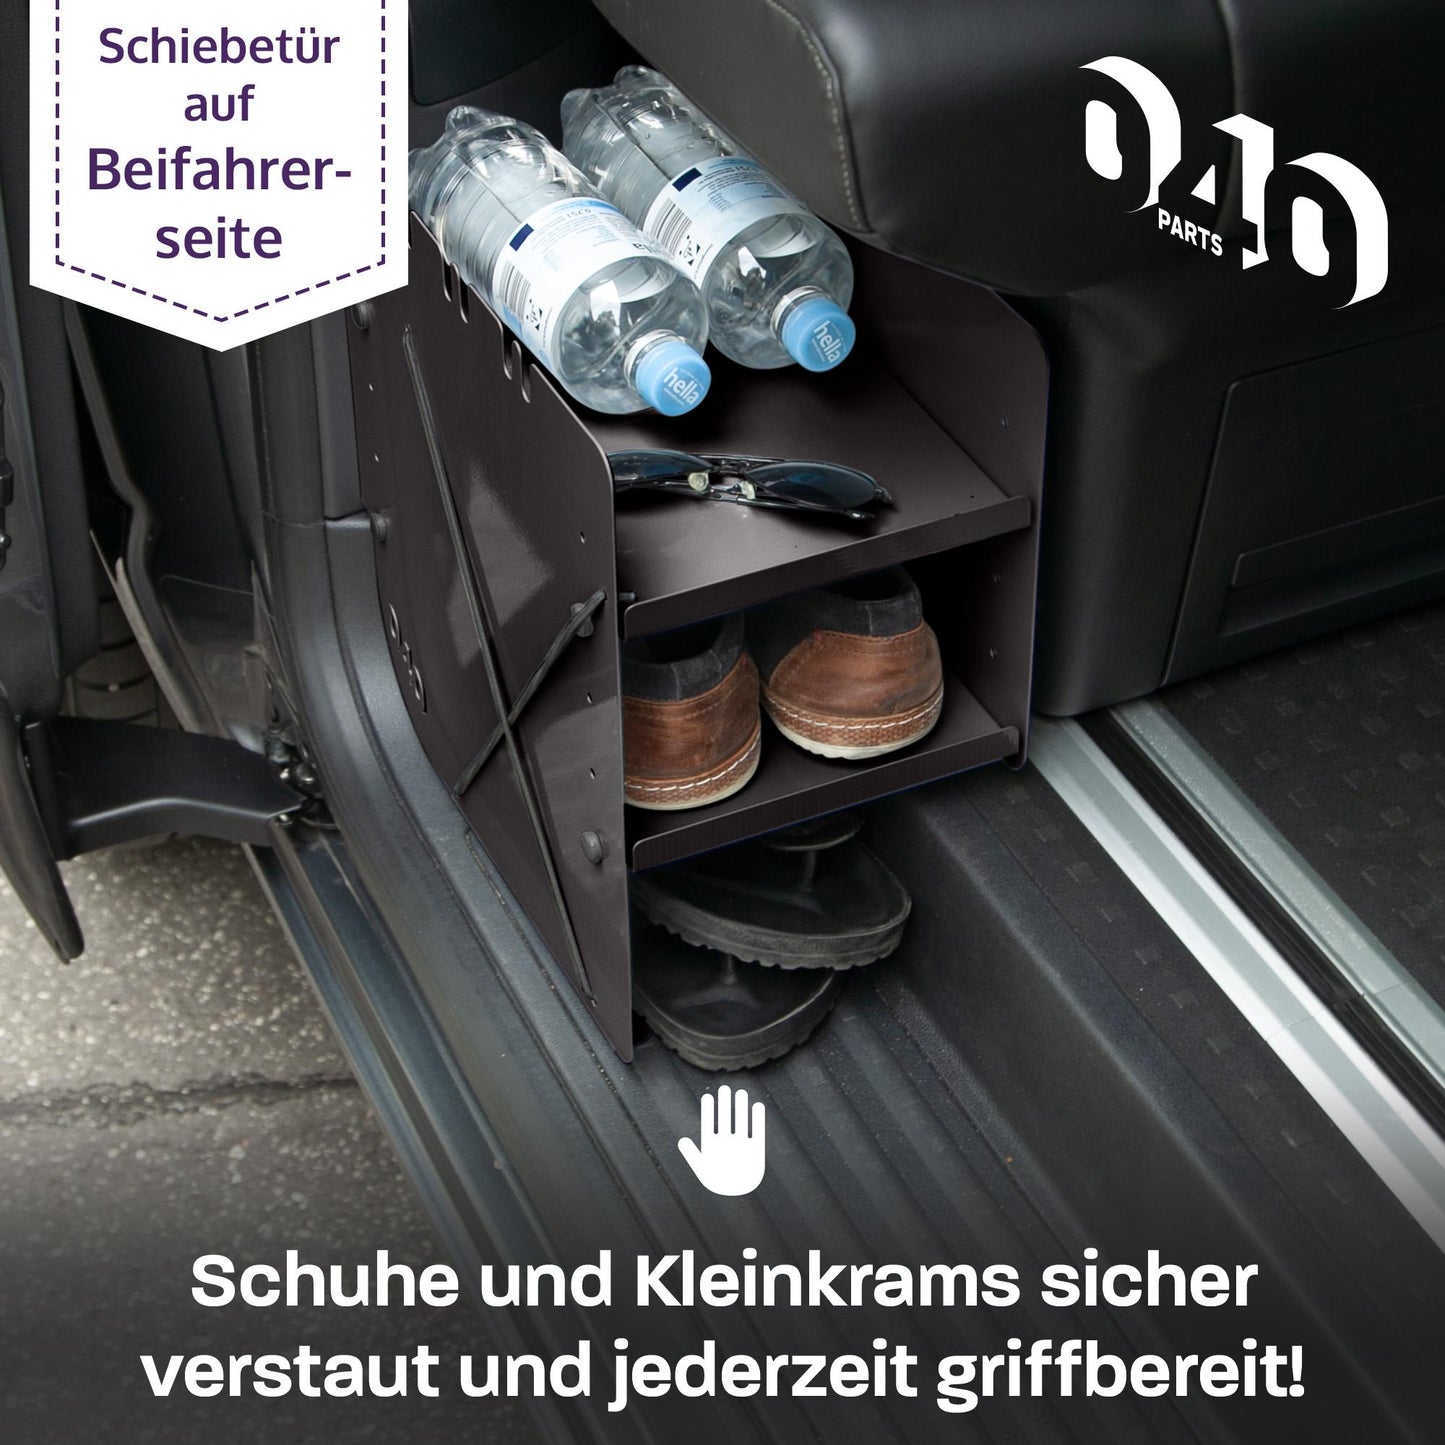 040 Parts Schuhregal SCHWARZ BEIFAHRERSEITE Zubehör passend für VW T5 T6 T6.1 Schuhorganizer Schuhtasche